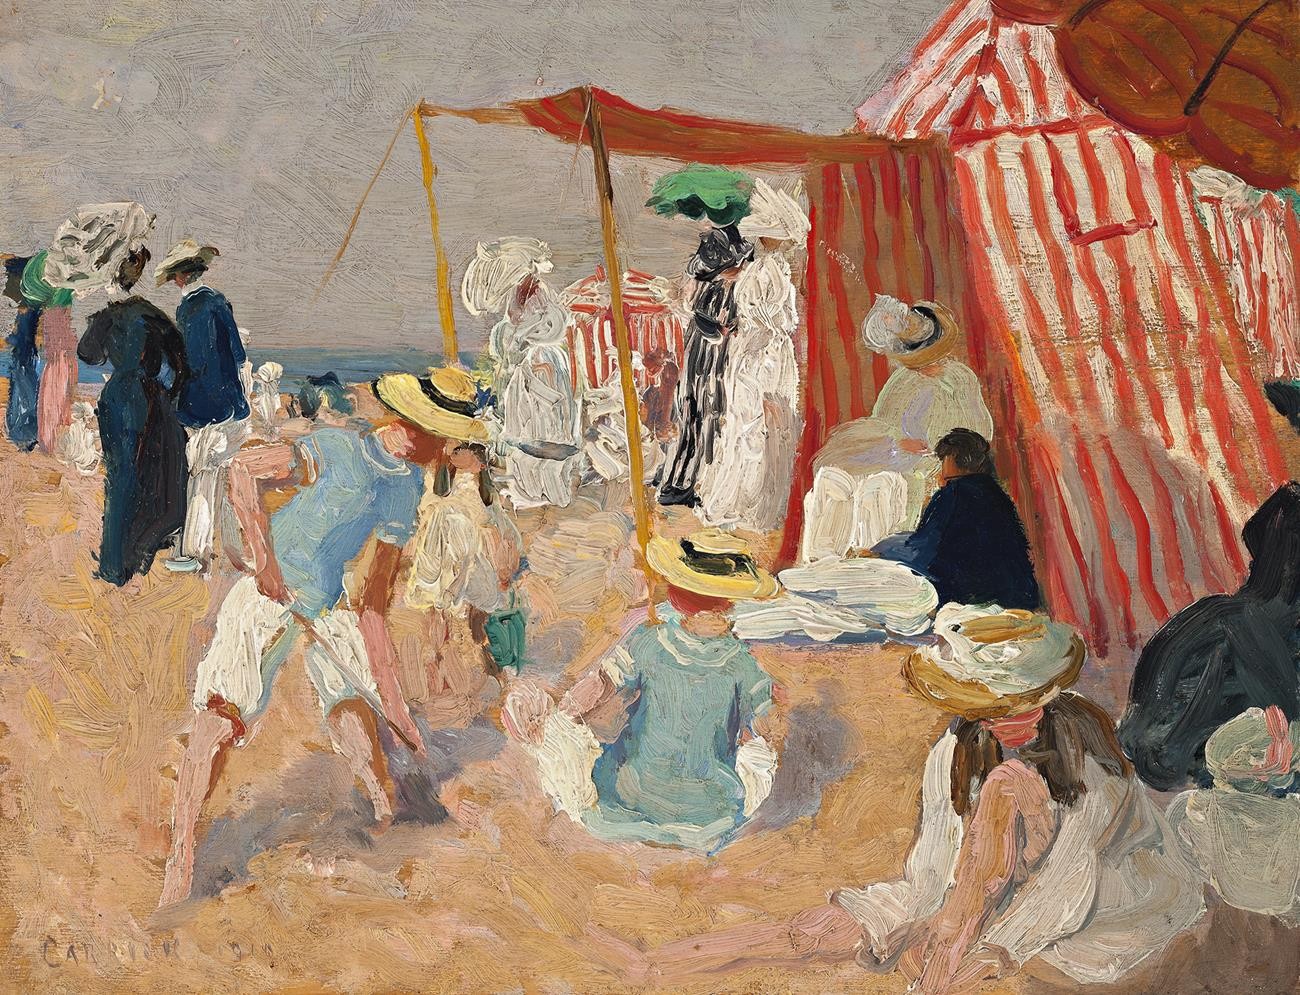 海滩上 by 埃塞尔 卡里克·福克斯 - 1910 - 27.0 x 35.0 cm 